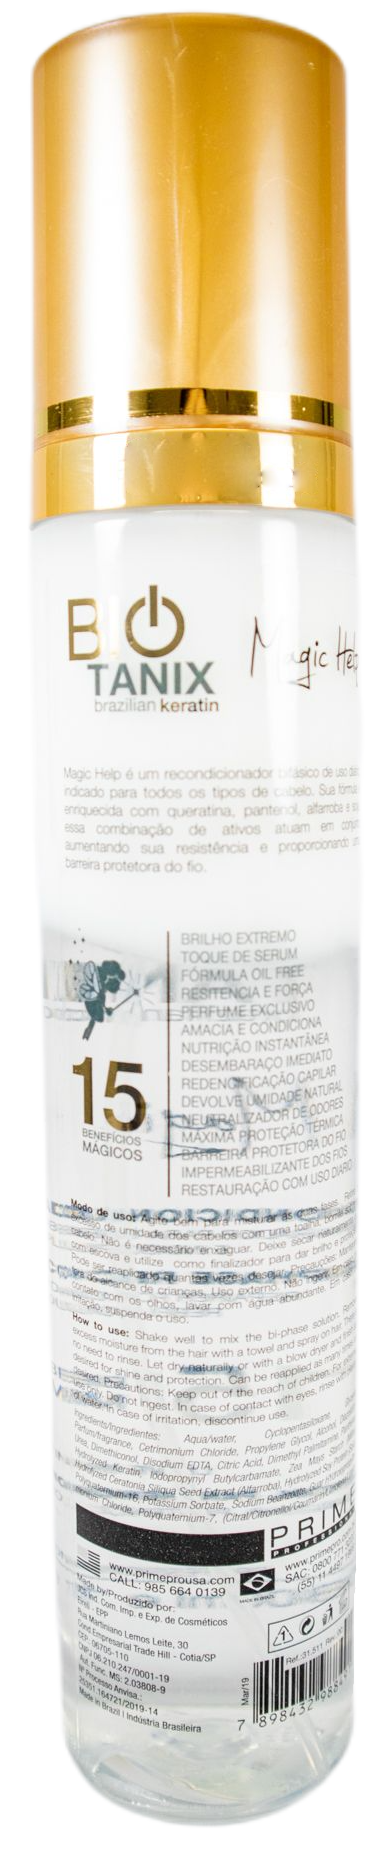 Prime Pro Extreme Hair Oil Bio Tanix Magic Help Brazilian Protein 300ml - Prime Pro